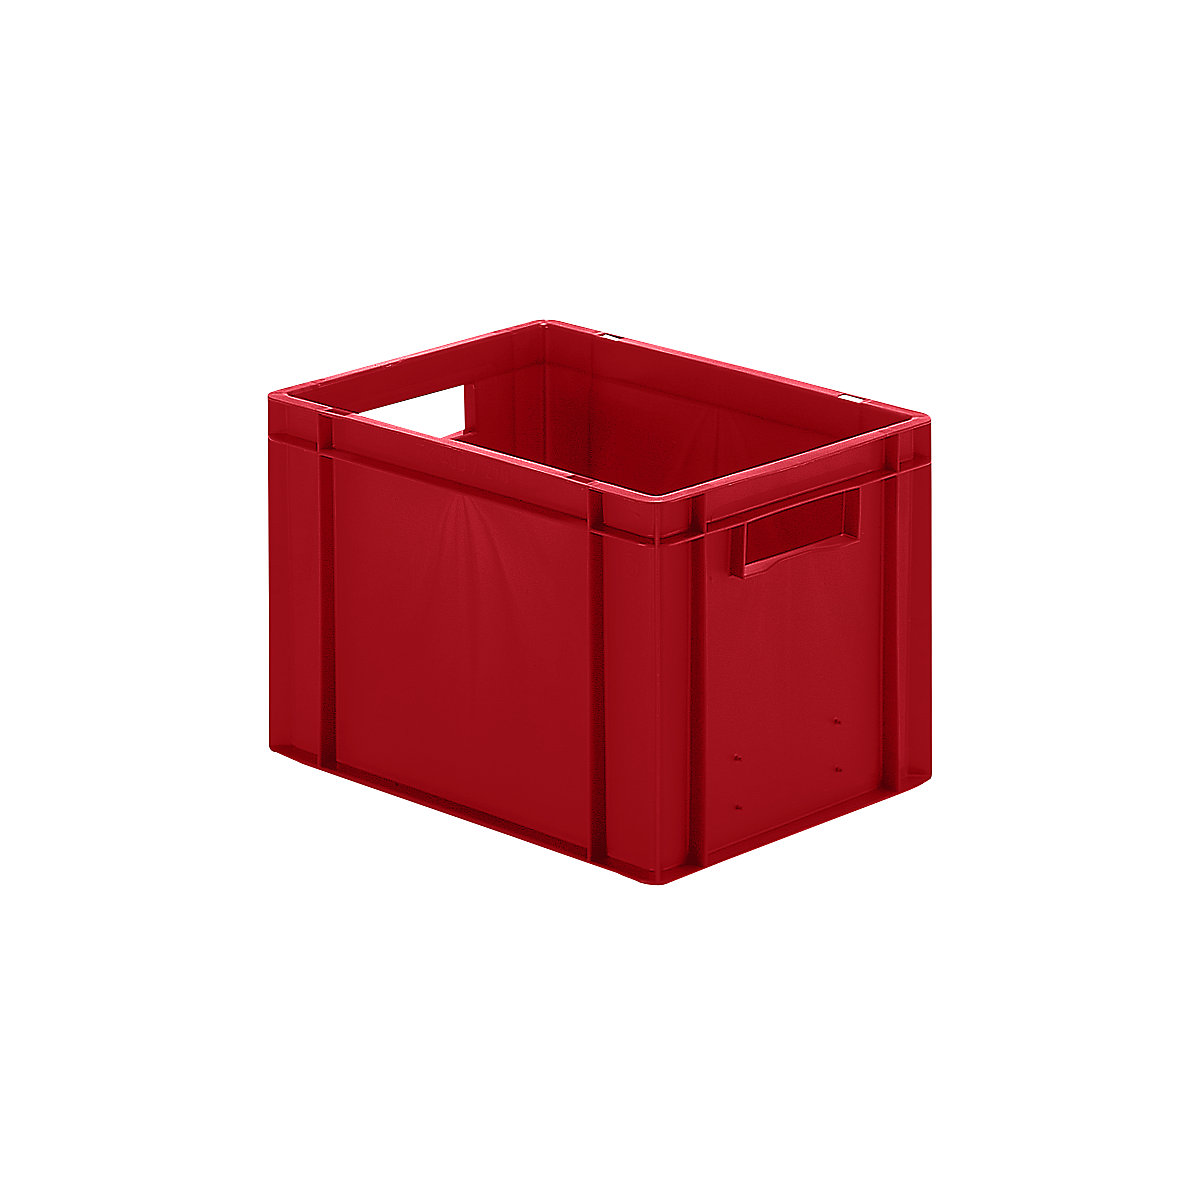 Euro-Format-Stapelbehälter, Wände und Boden geschlossen, LxBxH 400 x 300 x 270 mm, rot, VE 5 Stk